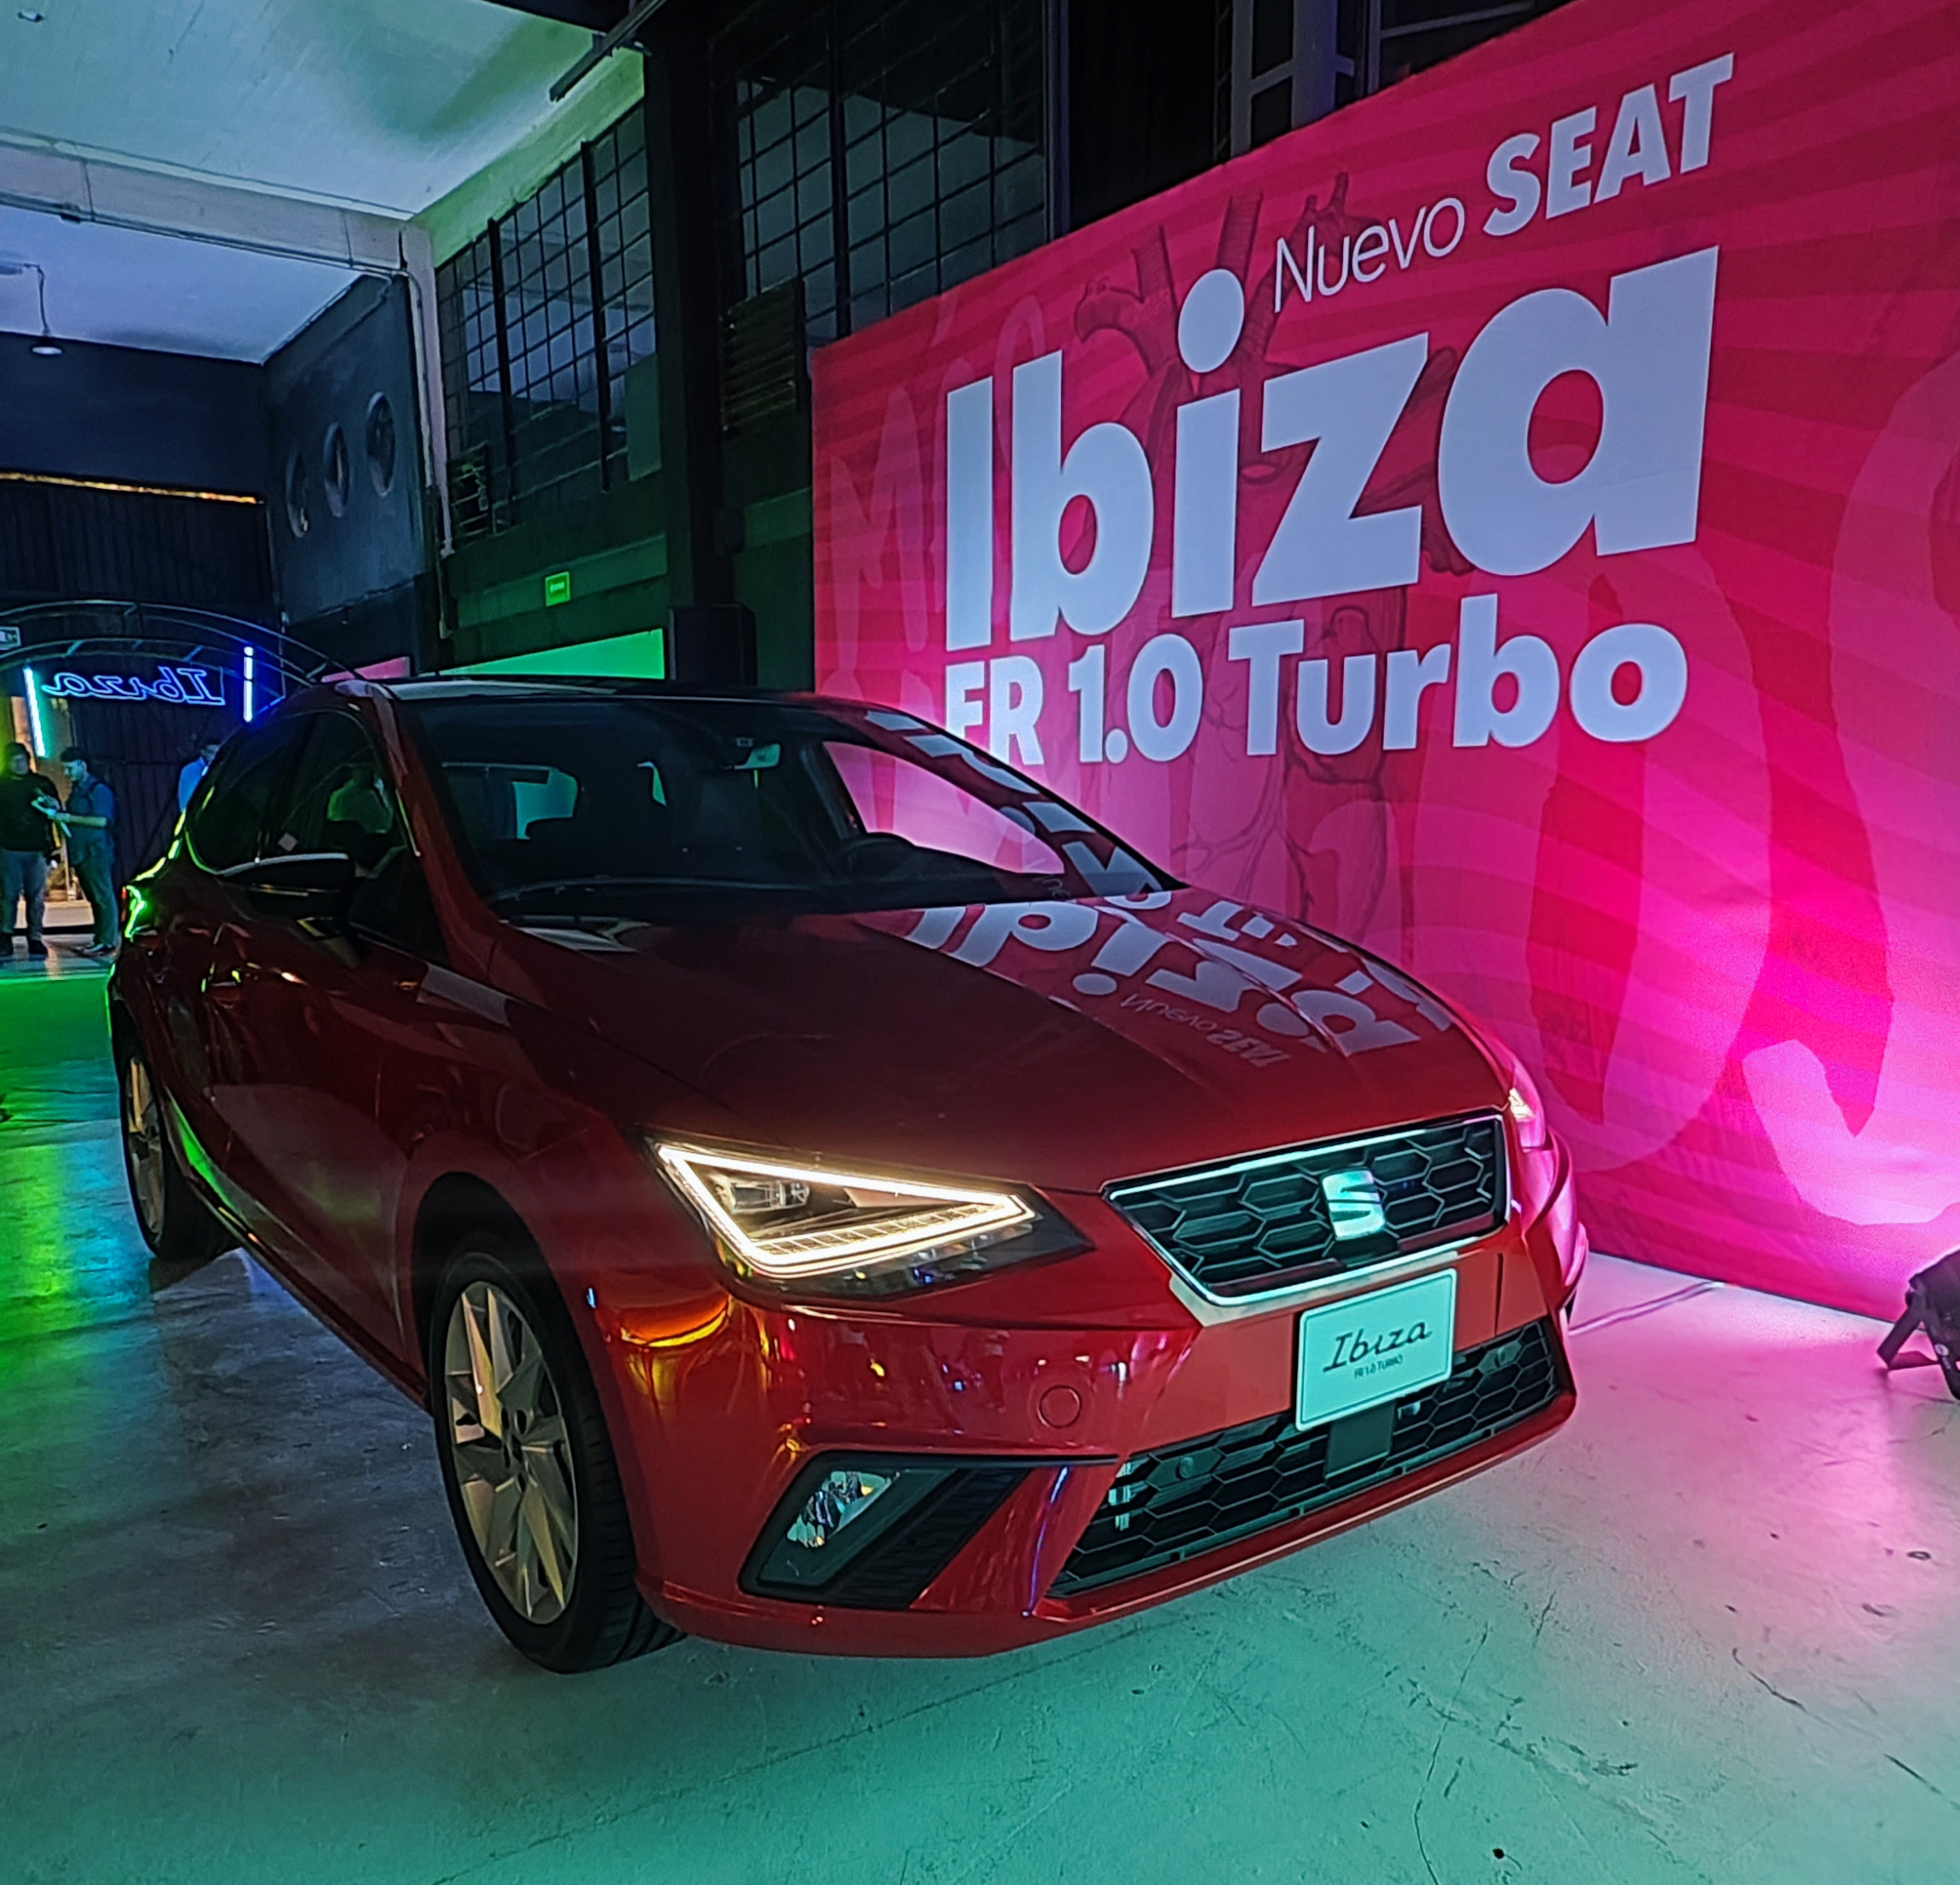 SEAT Ibiza FR 10 Turbo para los seguidores del hatchback